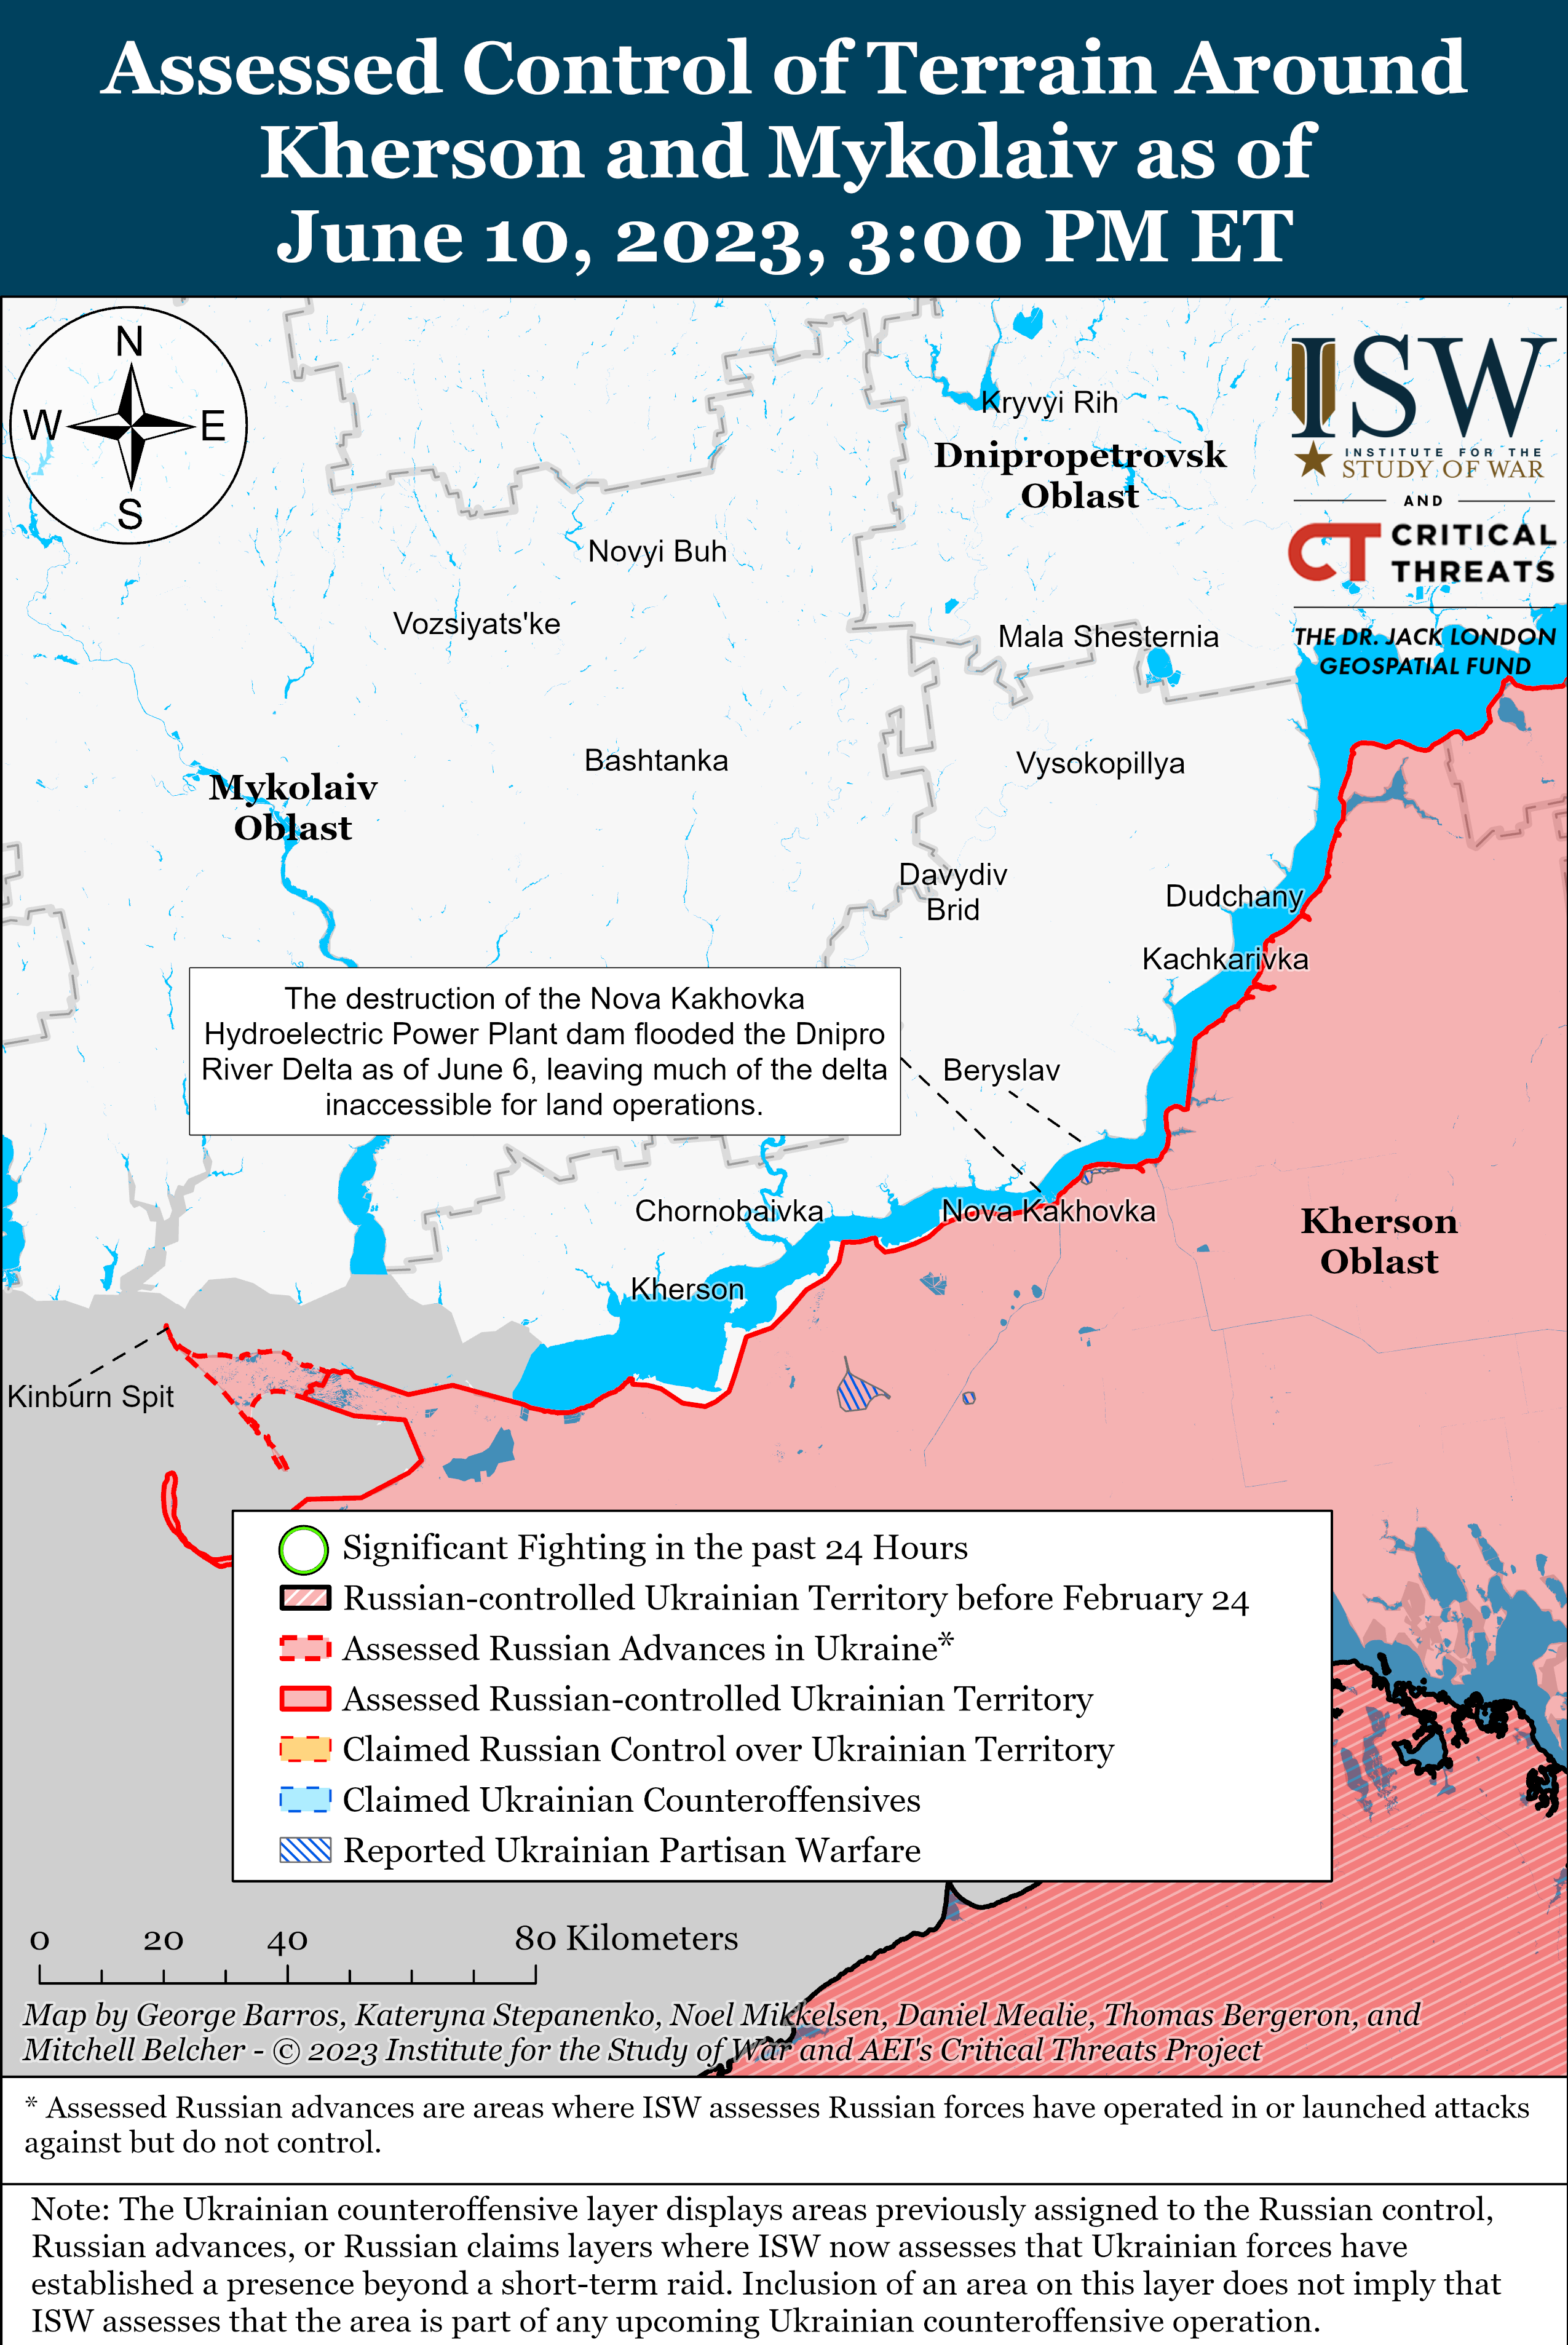 Украинские военные успешно контратакуют и продвигаются на юге: карты боев ISW